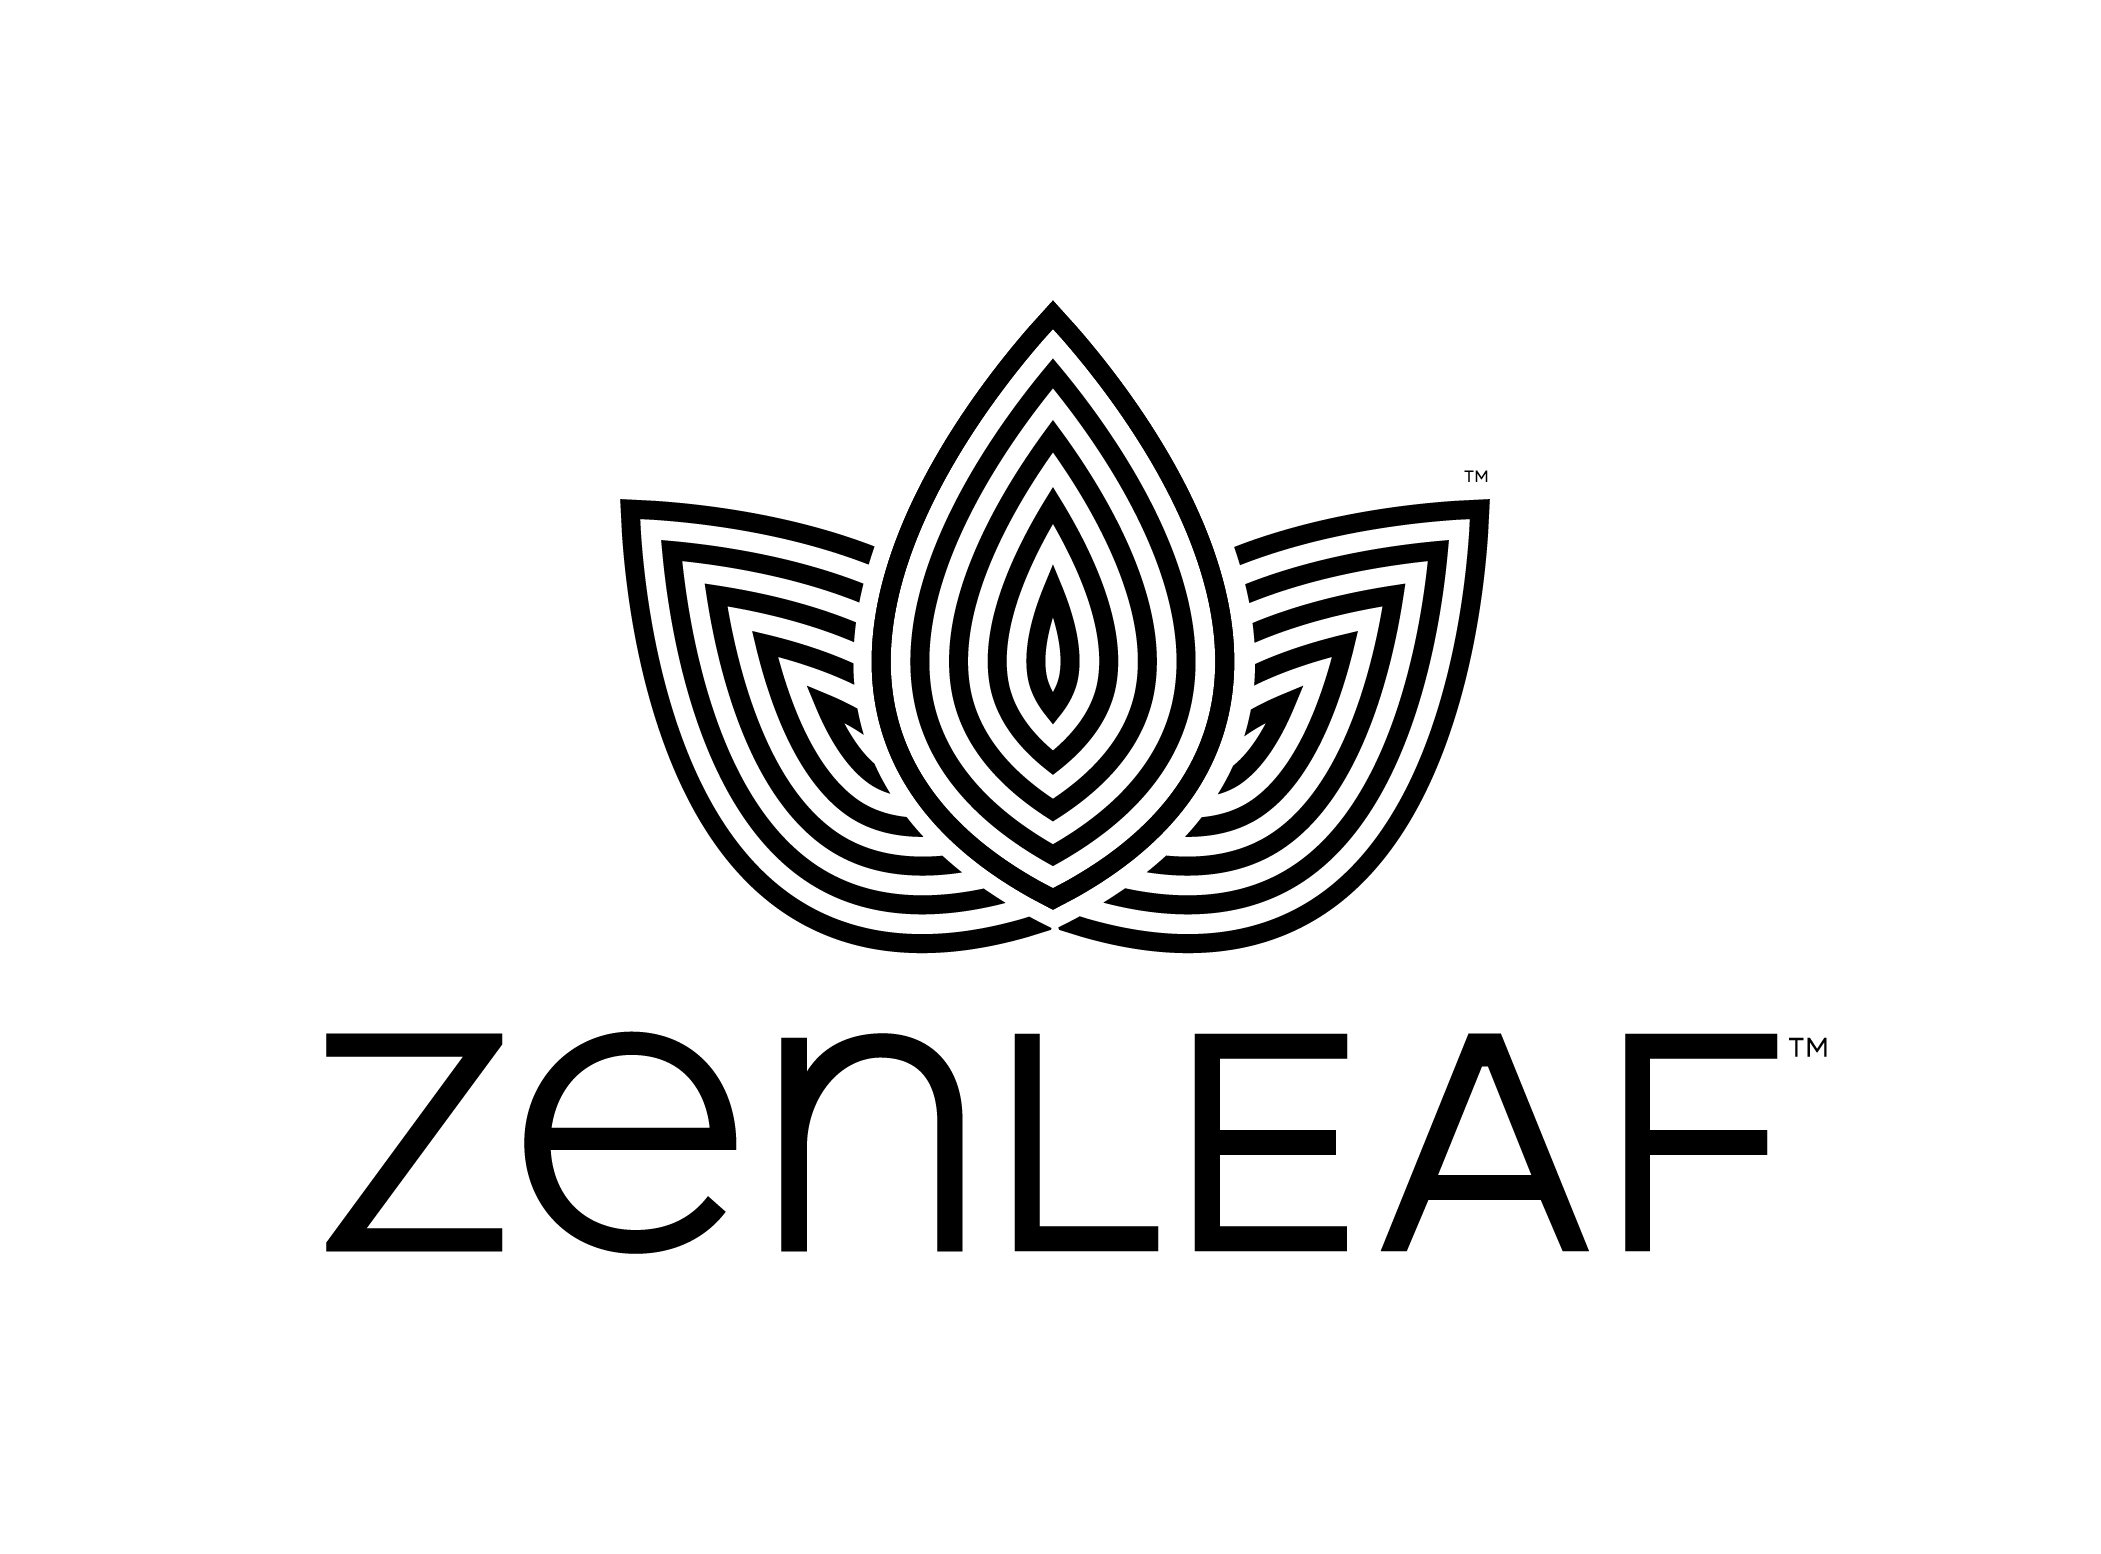 Zen Leaf Elkridge